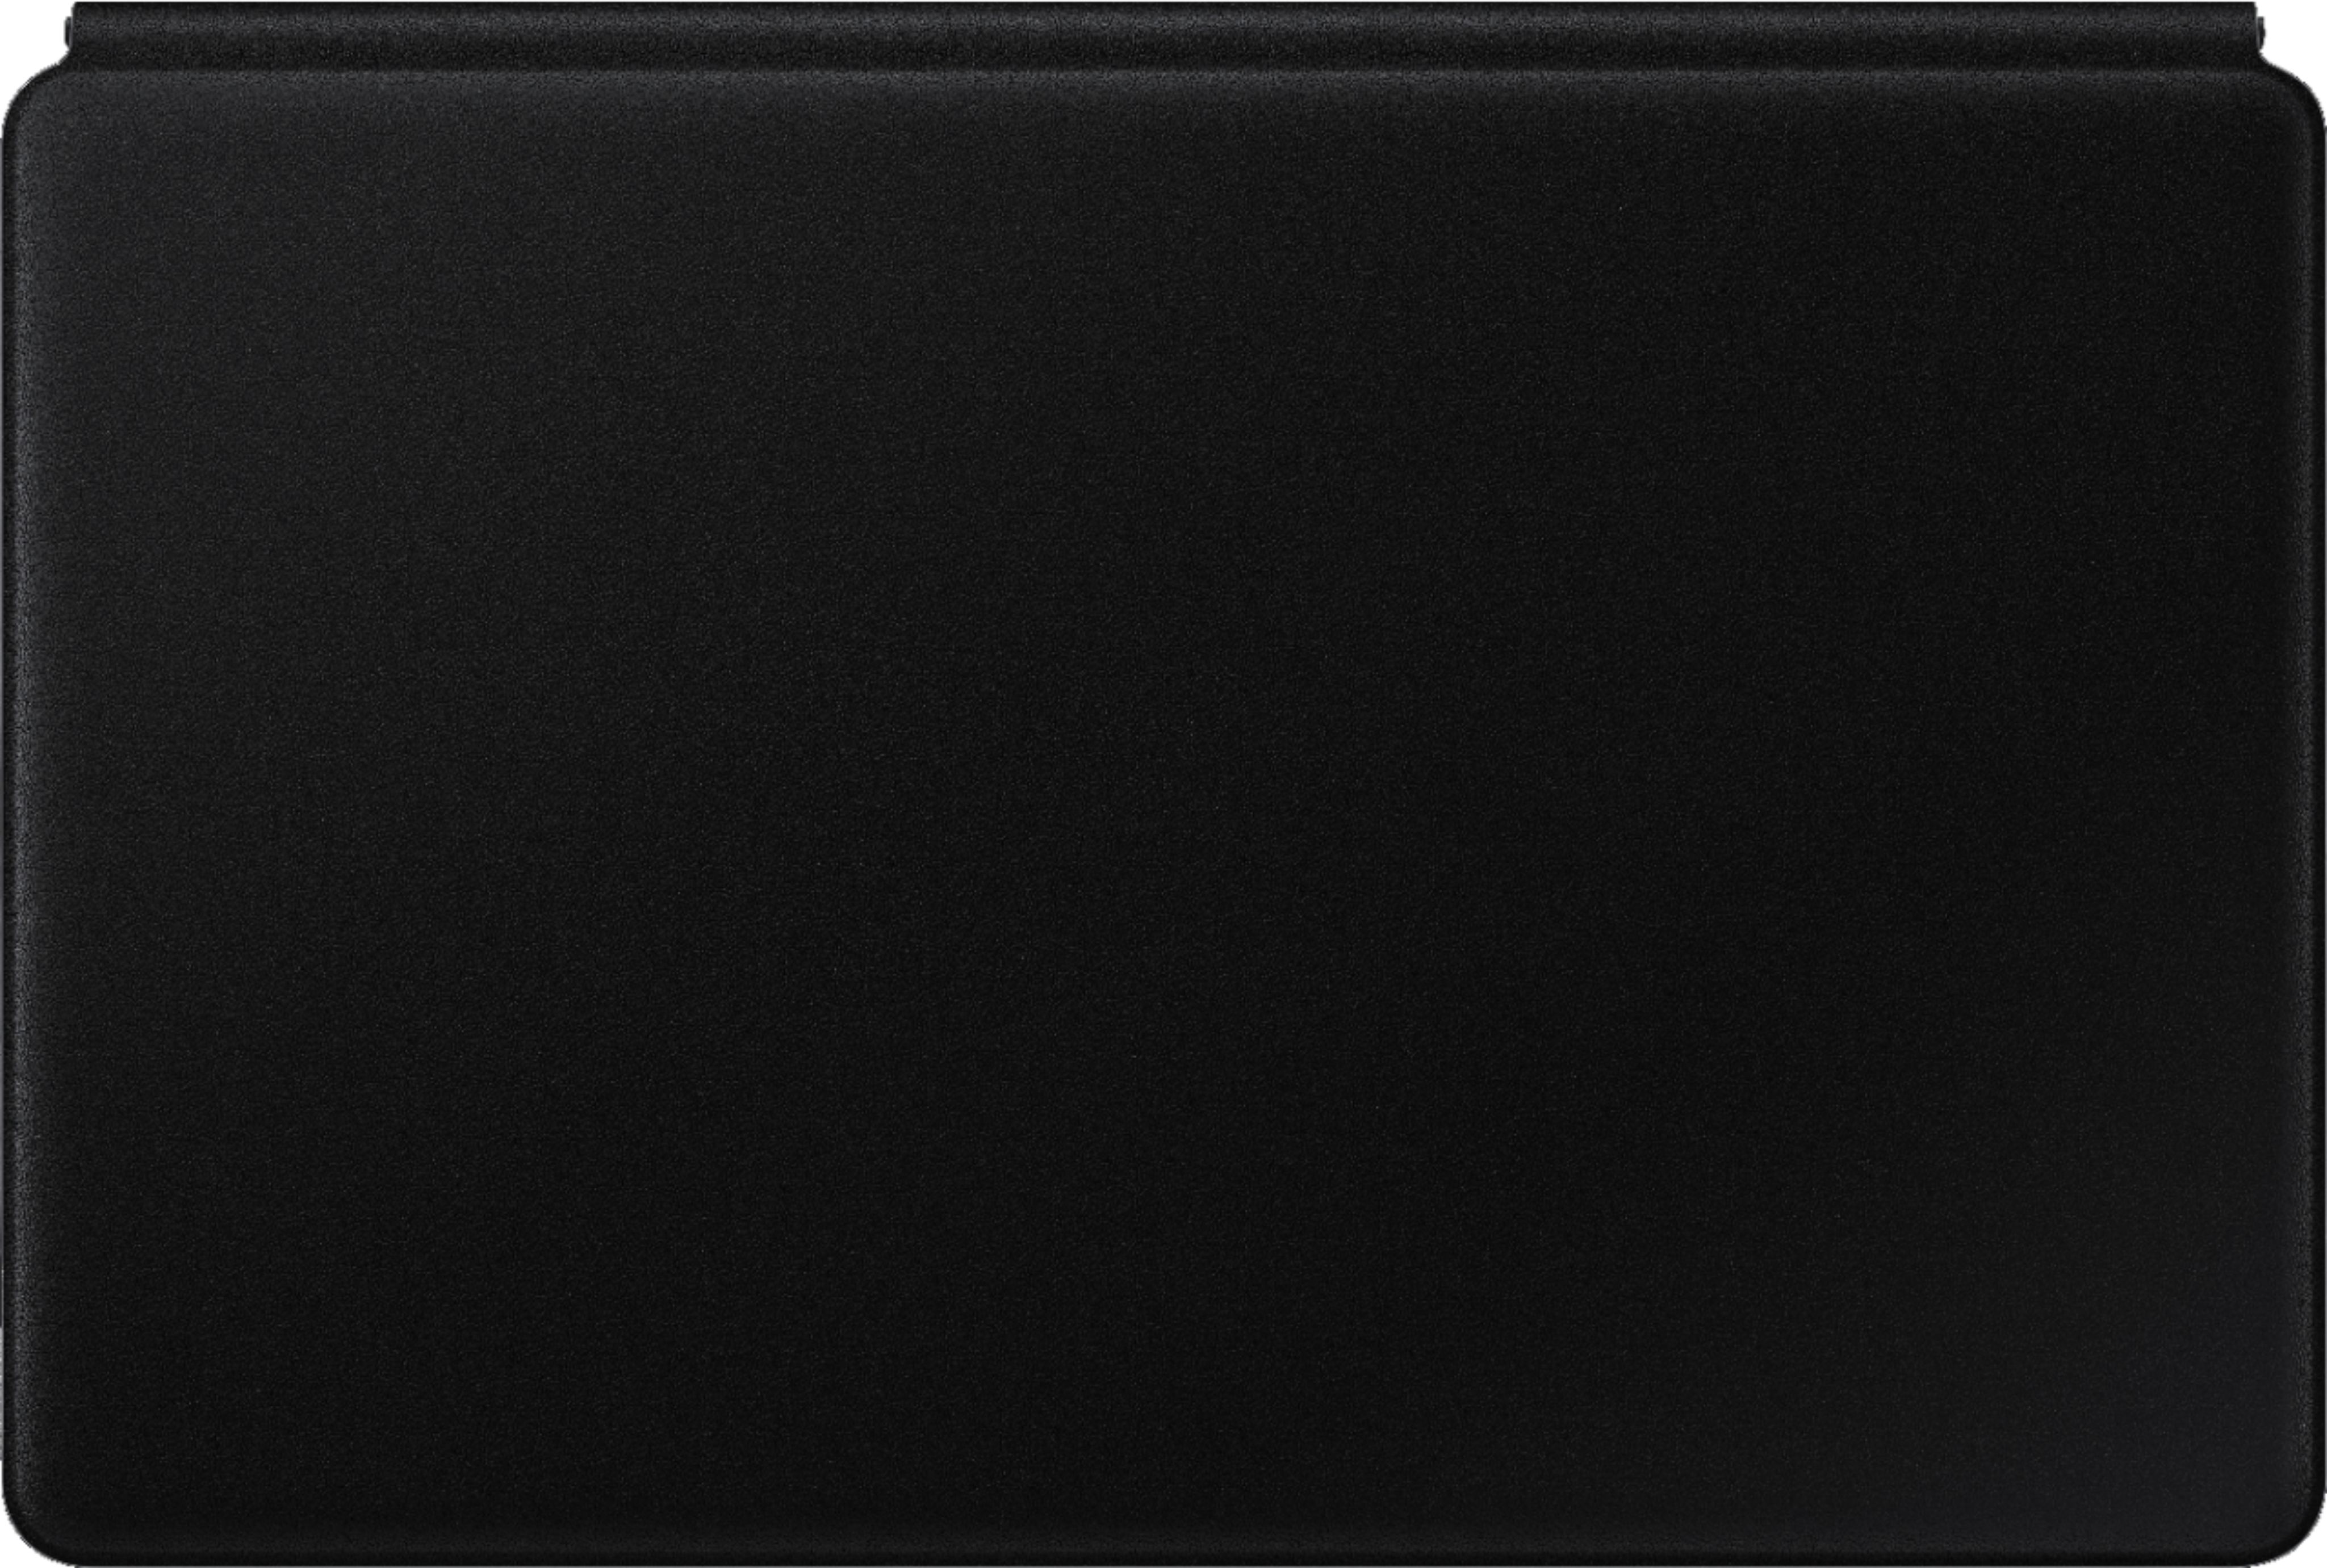 Samsung - Galaxy Tab S7+ Book Cover Keyboard - EF-DT970UBEGUJ - Black